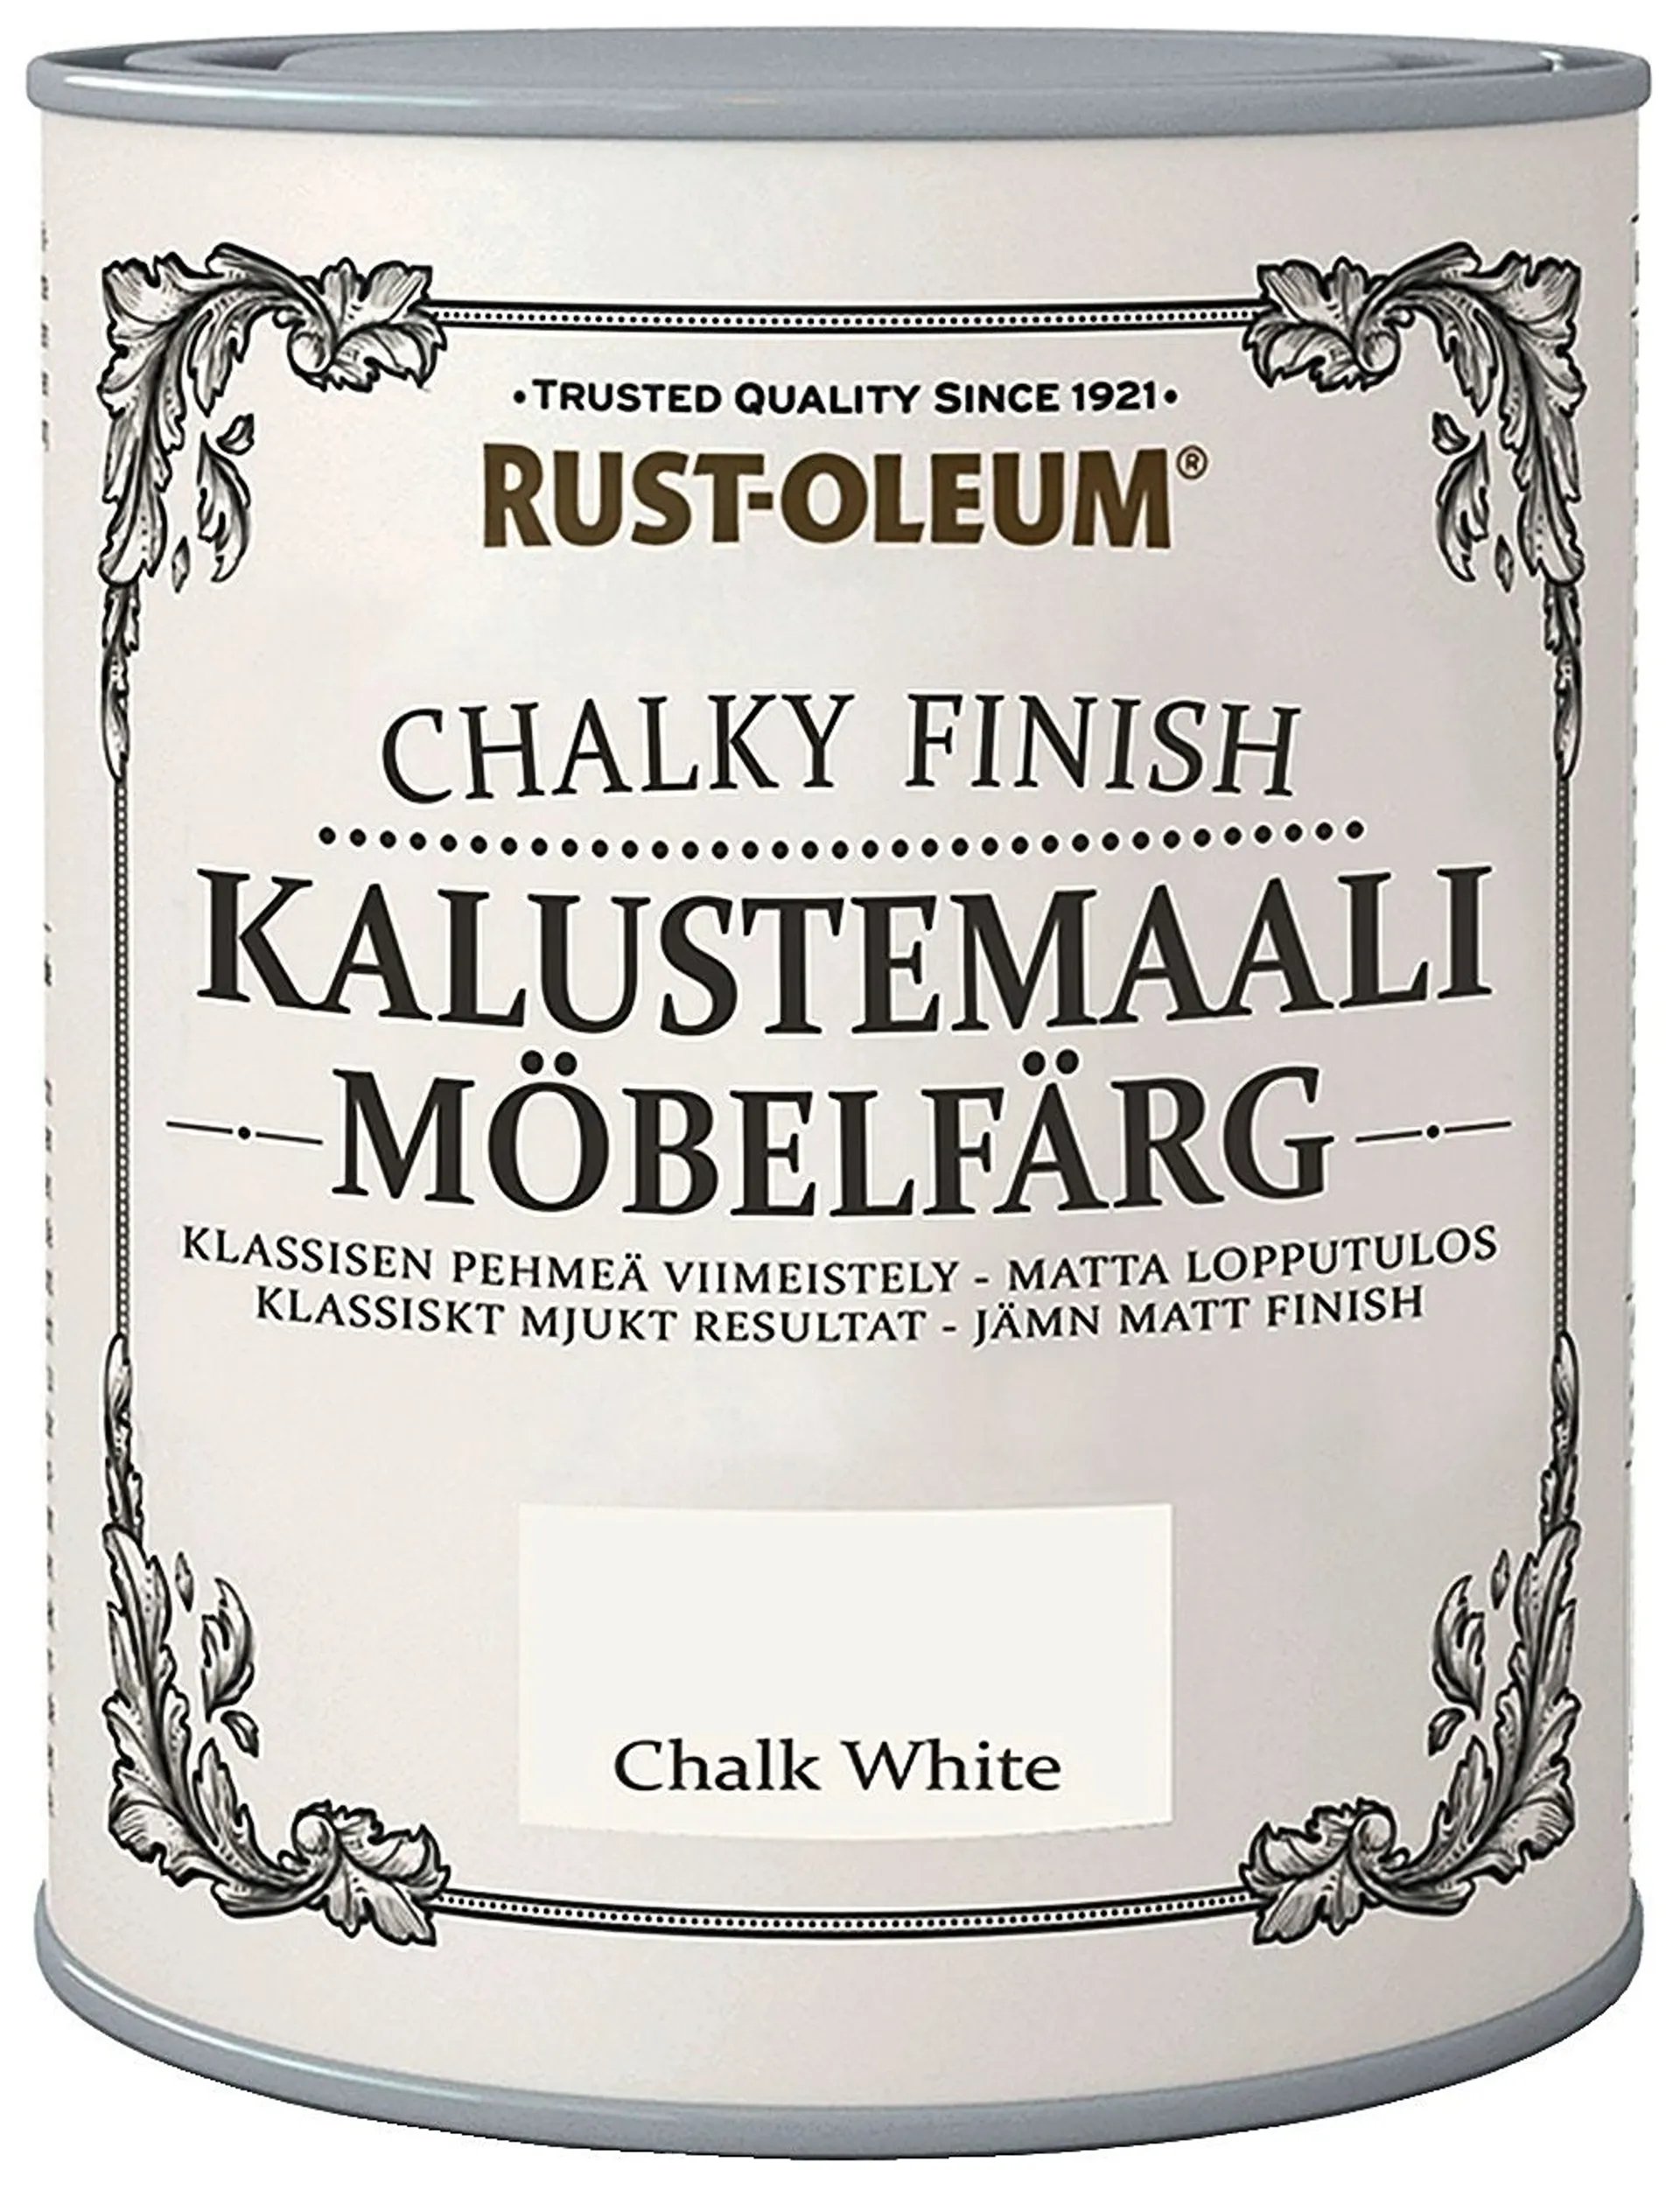 Rust-Oleum Chalky Finish 750ml kalustemaali luonnonvalkoinen - 1